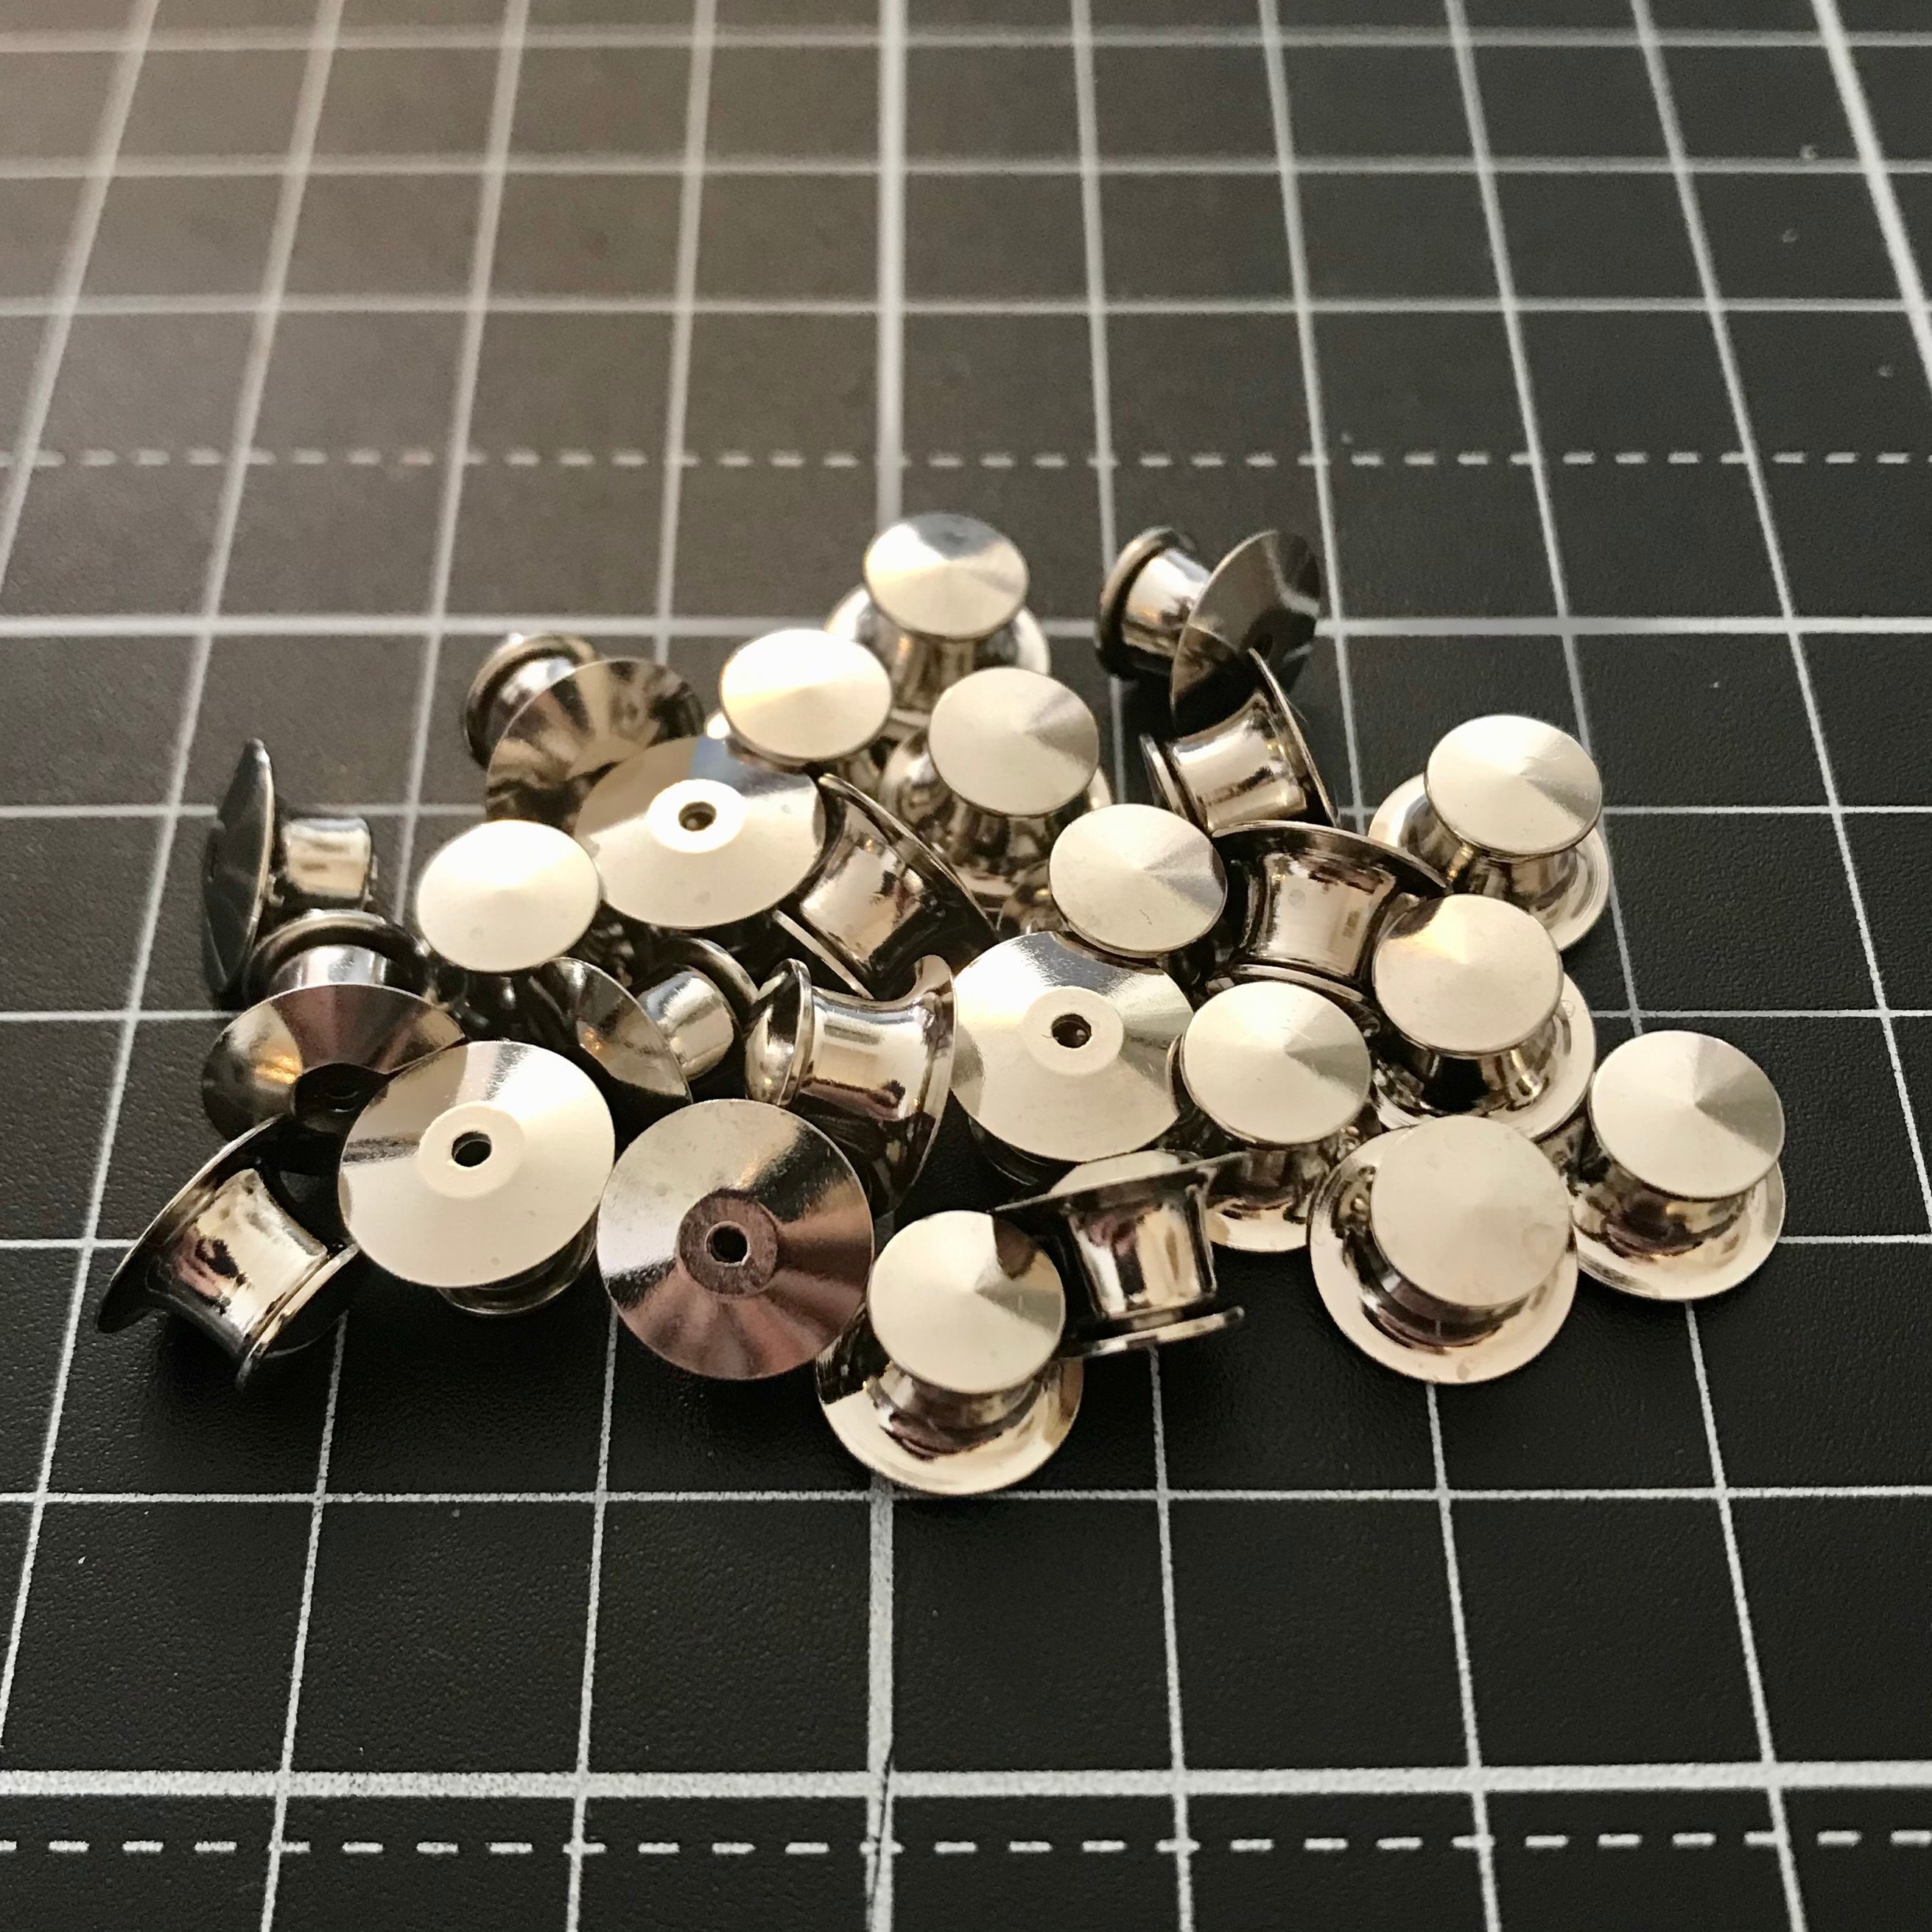 Locking Pin Backs - 12 Pack